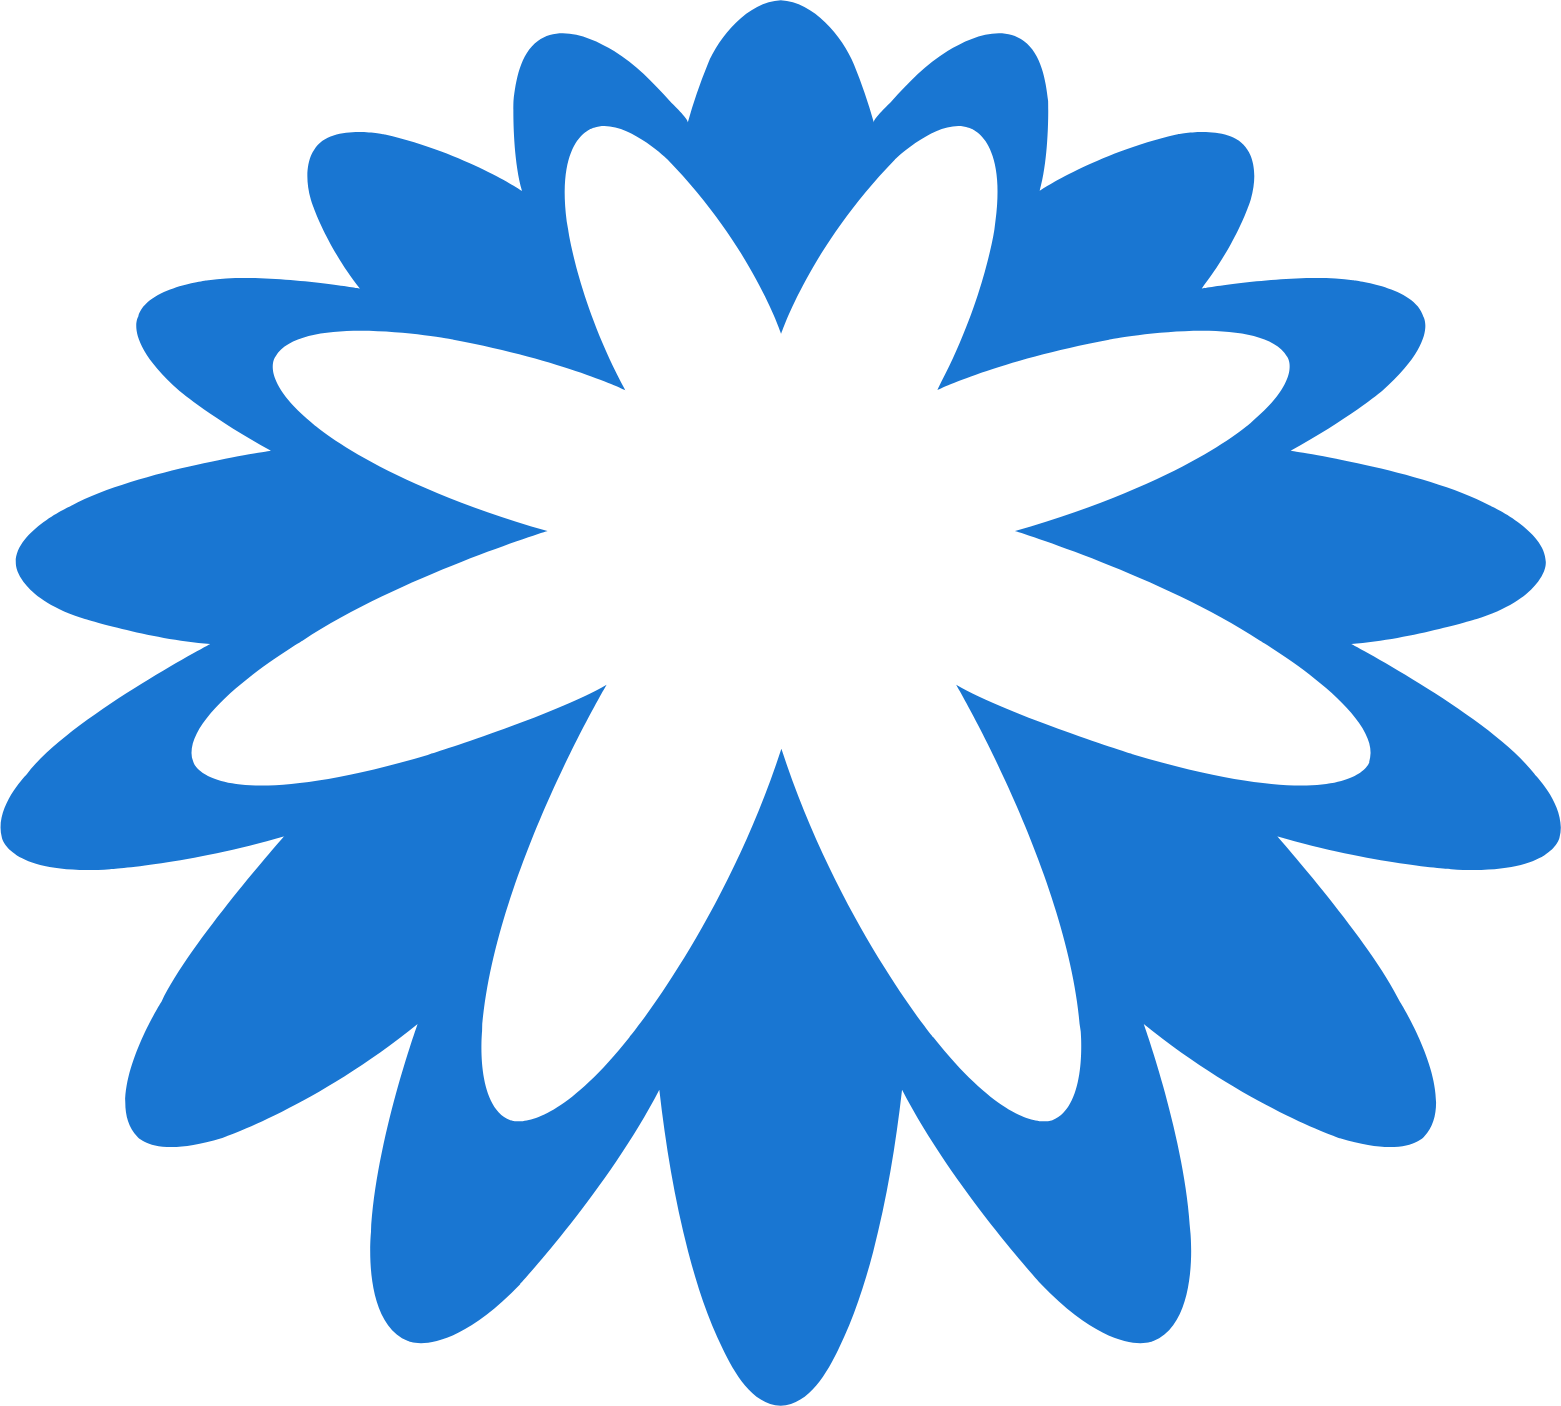 Coupa logo (PNG transparent)